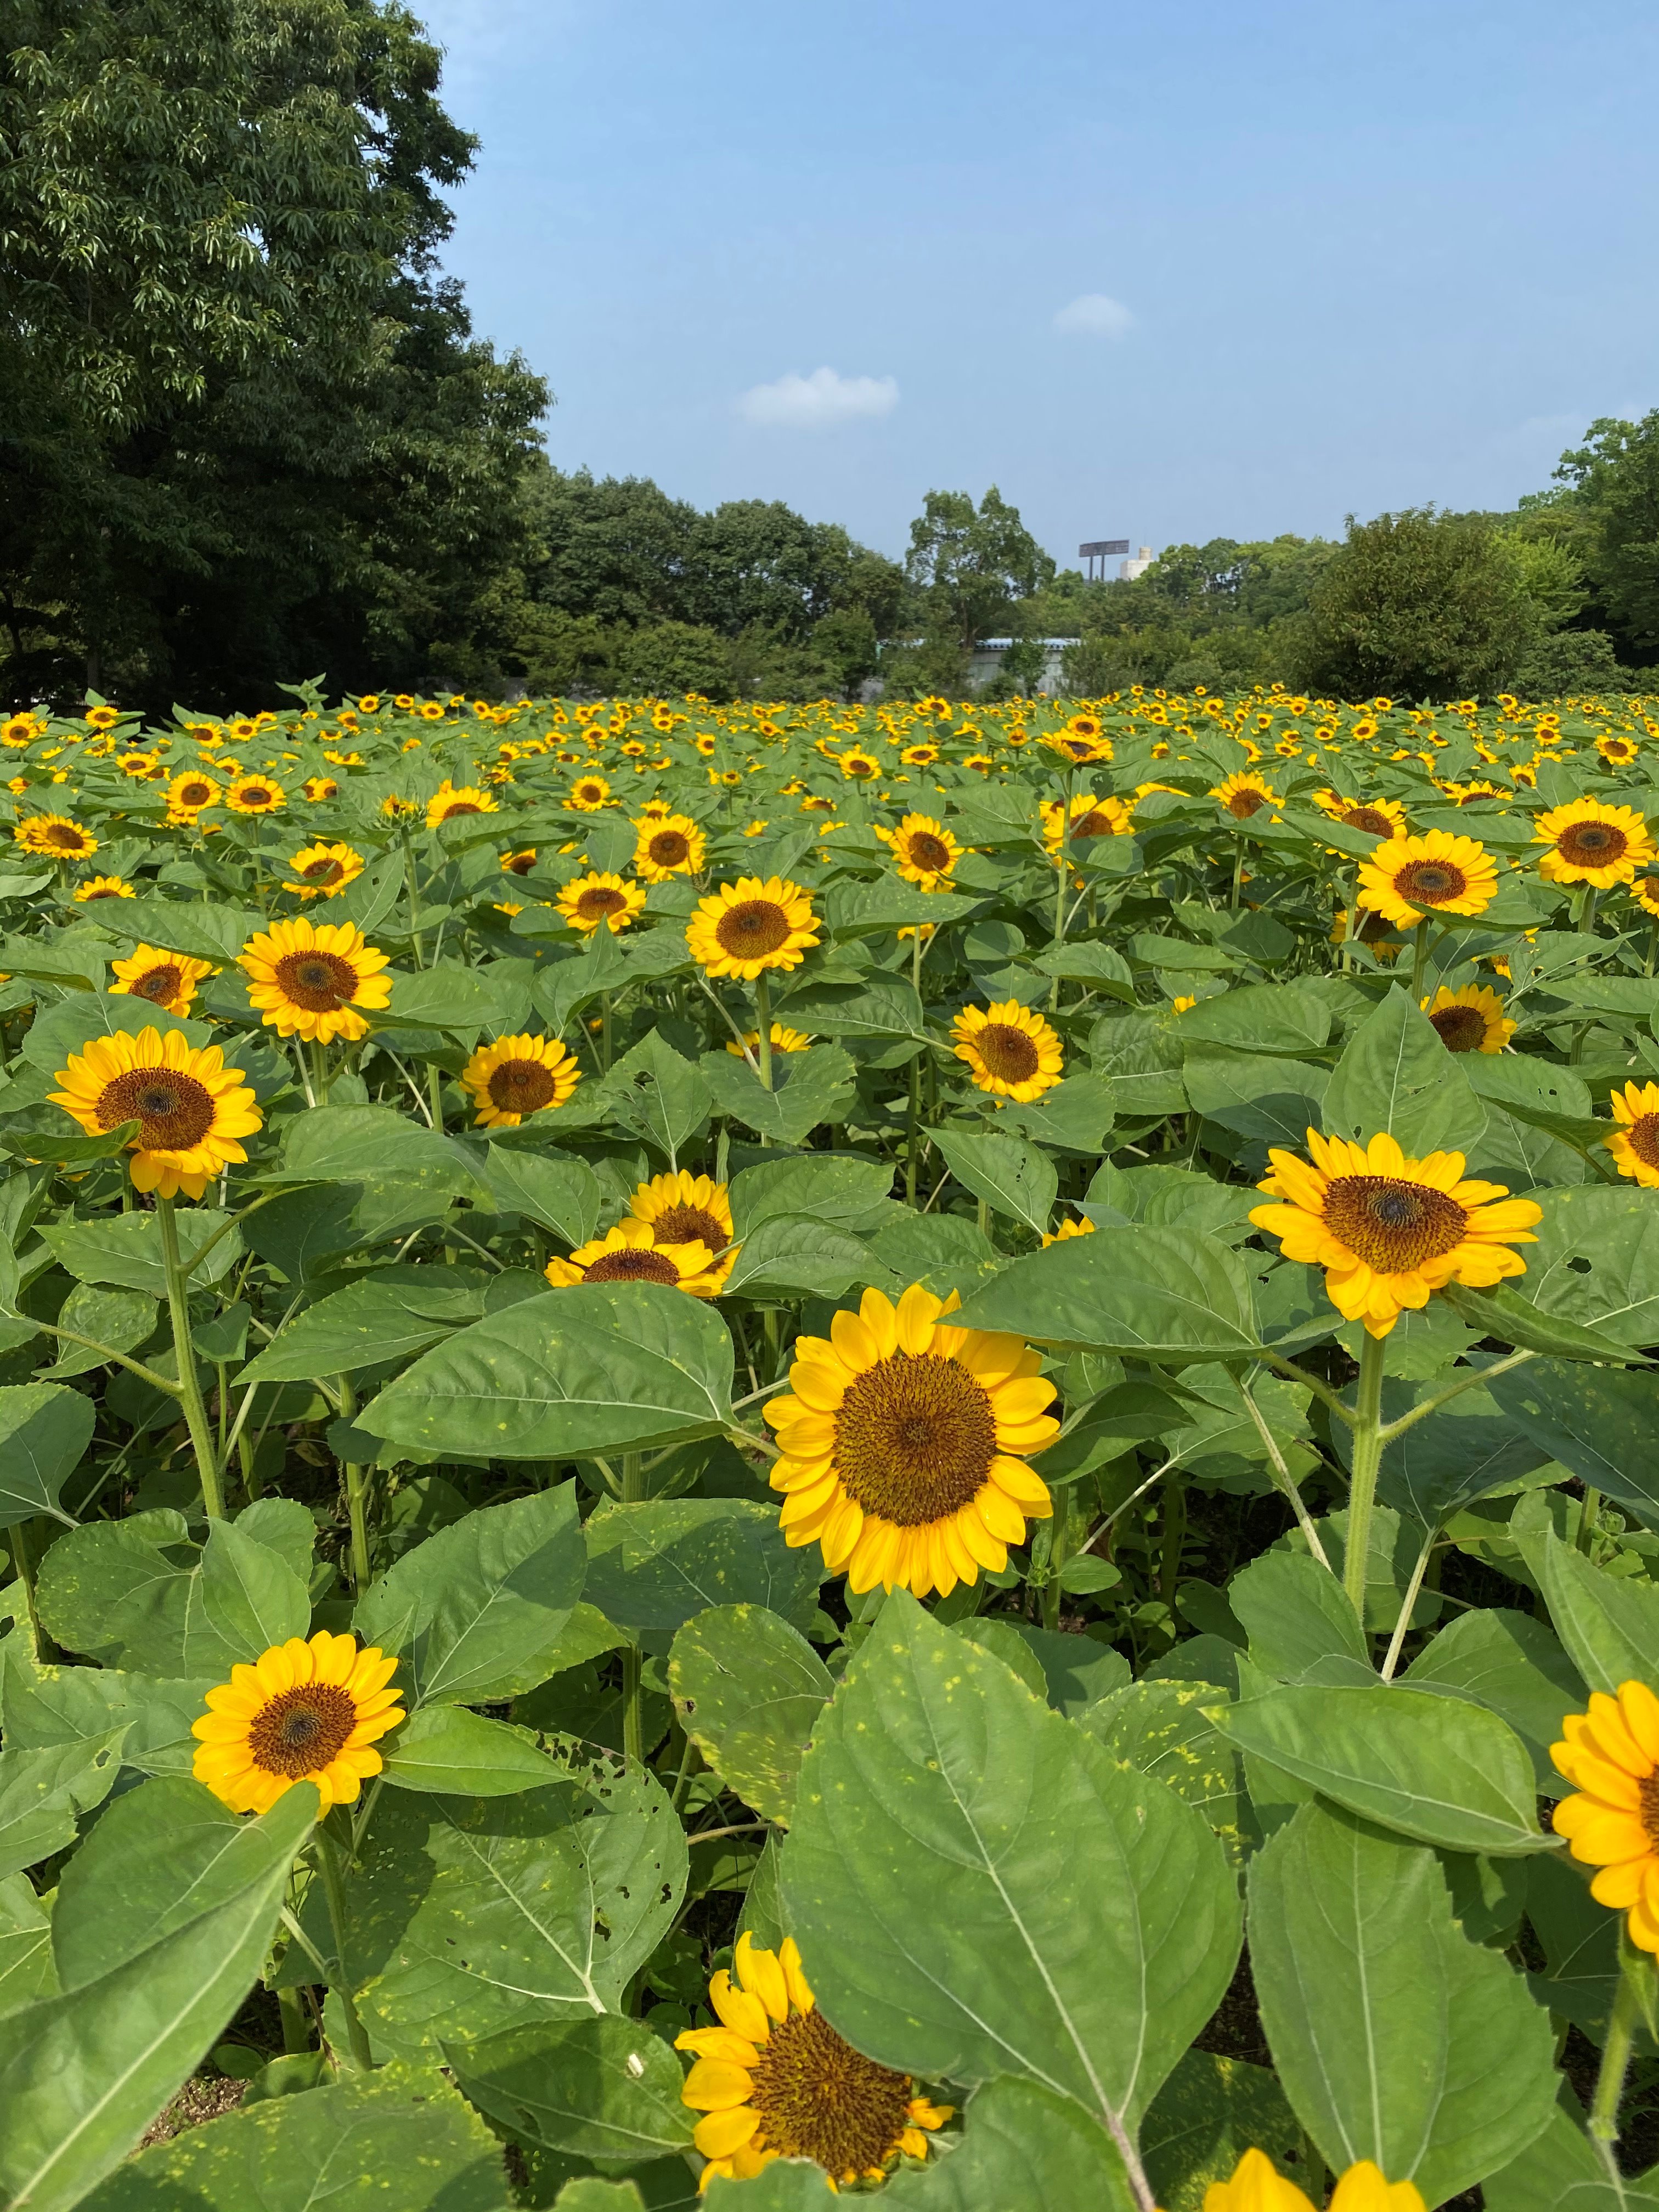 長居植物園 長居ひまわりレポ 年8月5日 本日の ひまわり 畑です 一万株のひまわりの一番花が満開です 毎日かわるひまわりの開花情報をsnsにてご紹介しております ぜひチェックしてみてくださいね 長居植物園 T Co Kclq7a5xcd